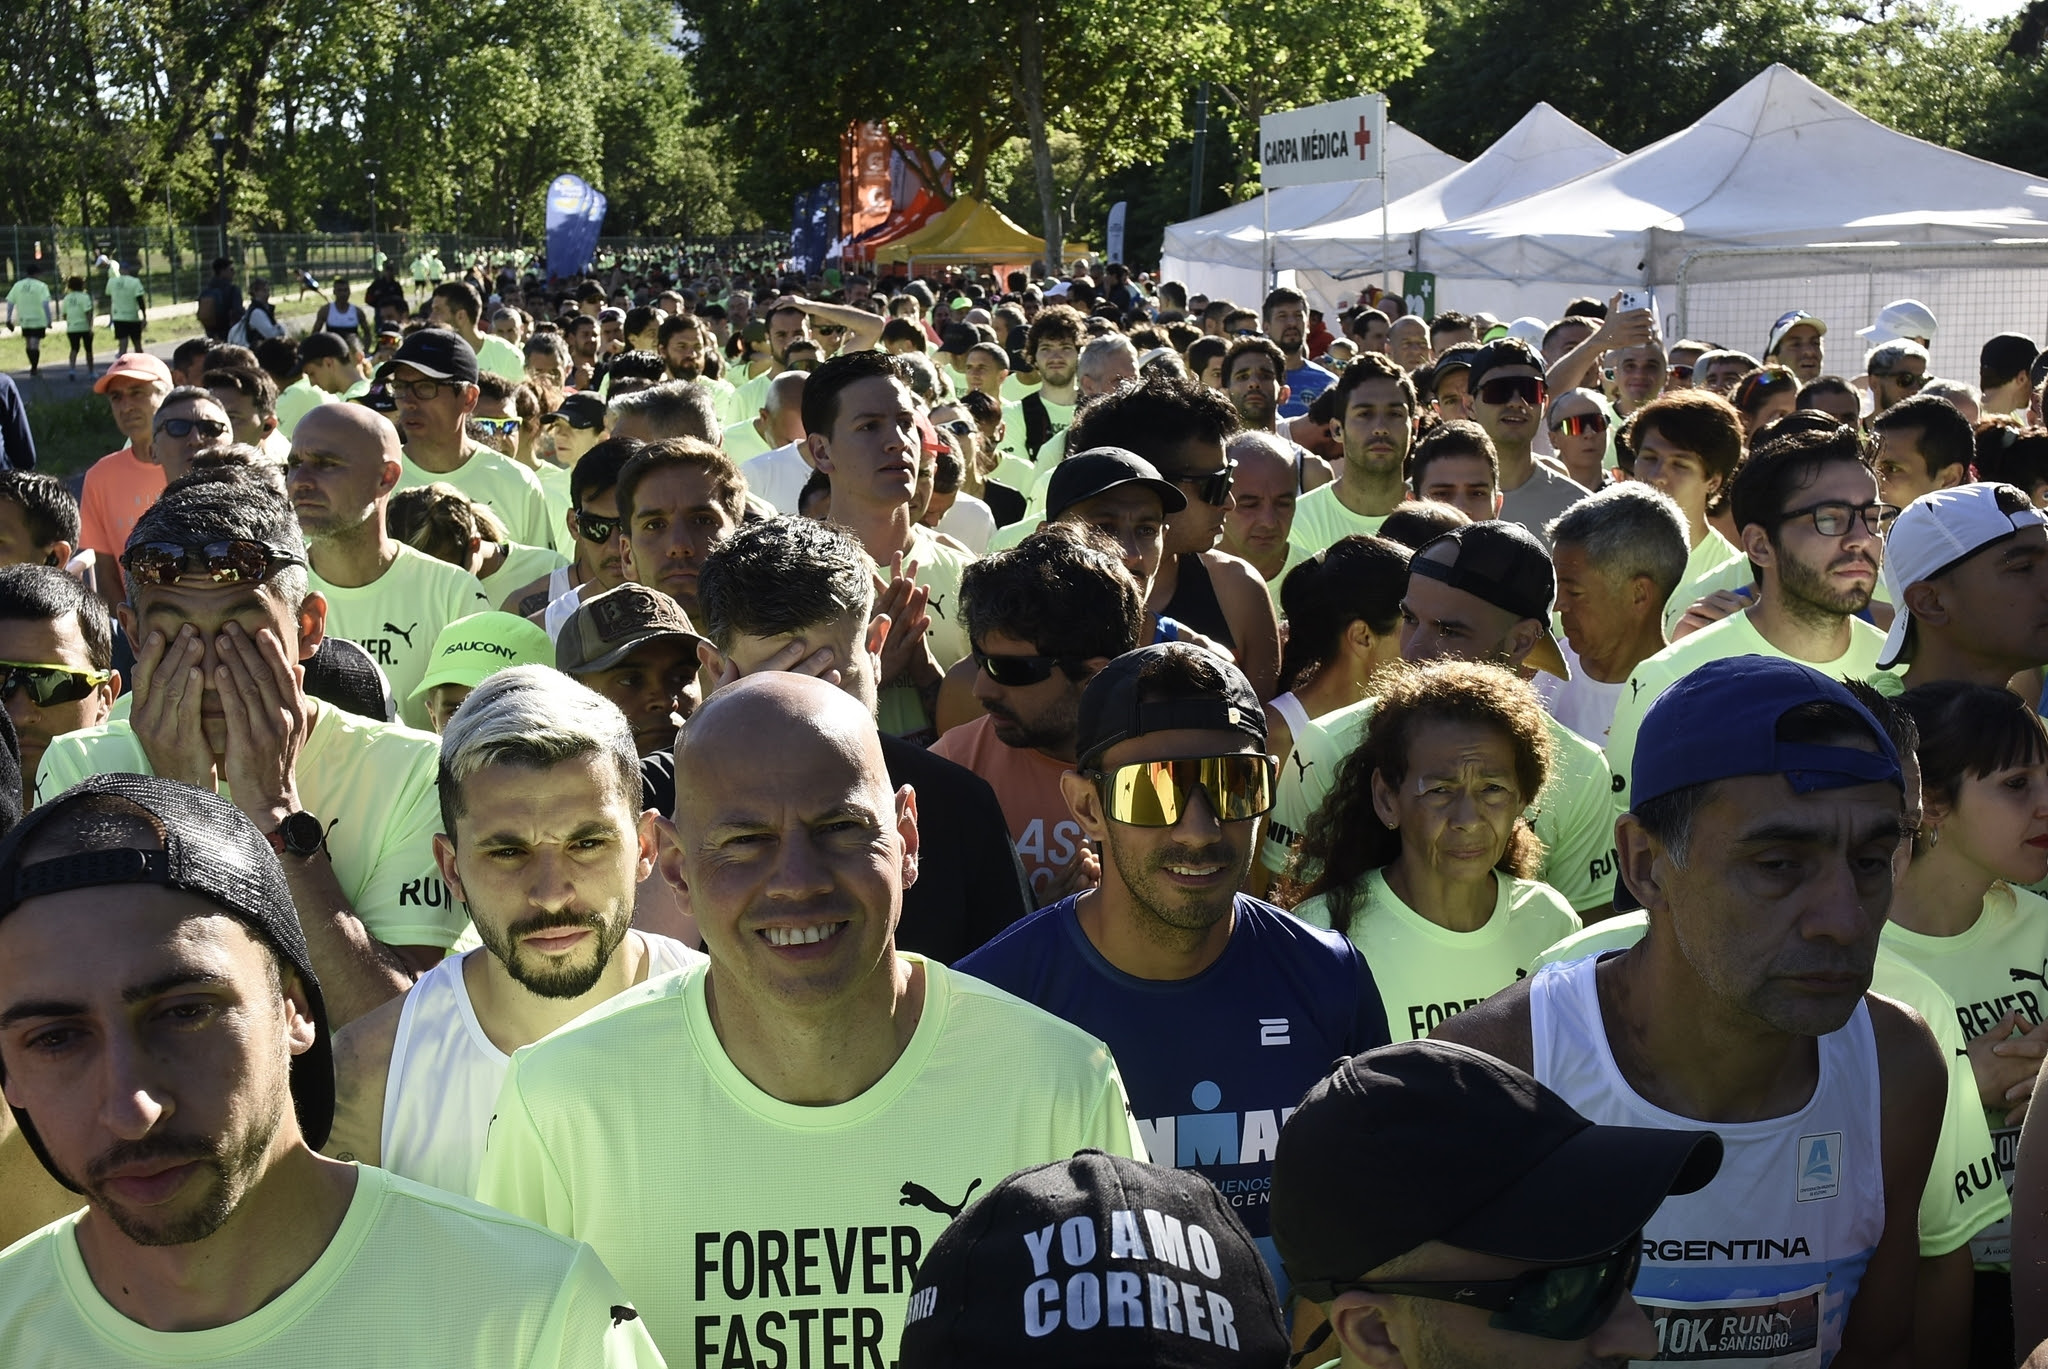 Running: una multitud corrió los 10K de San Isidro, los detalles y resultados oficiales